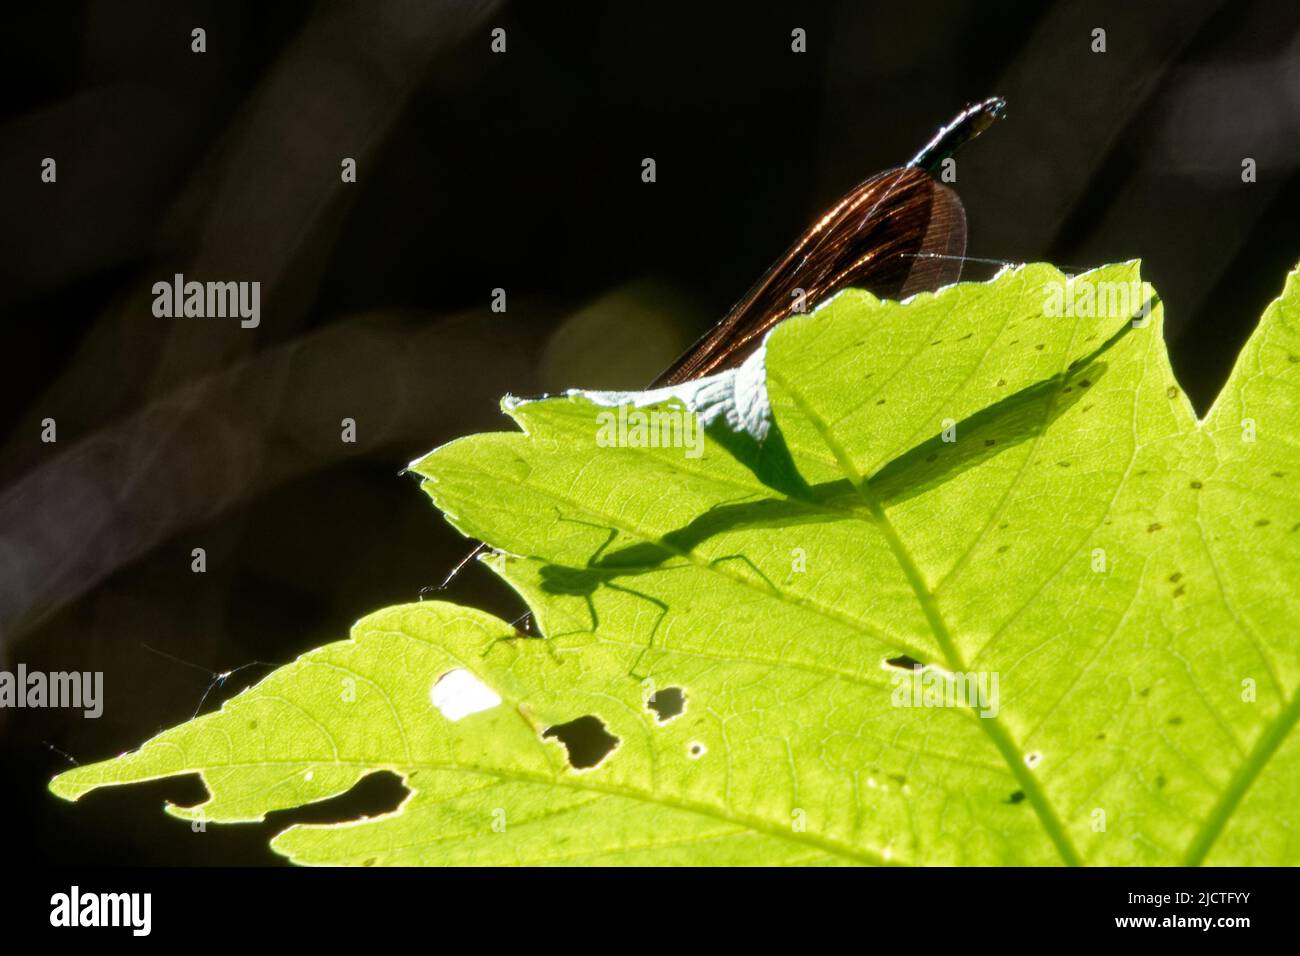 Damselfie sono insetti volanti del sottordine Zygoptera nell'ordine Odonata. Foto Stock